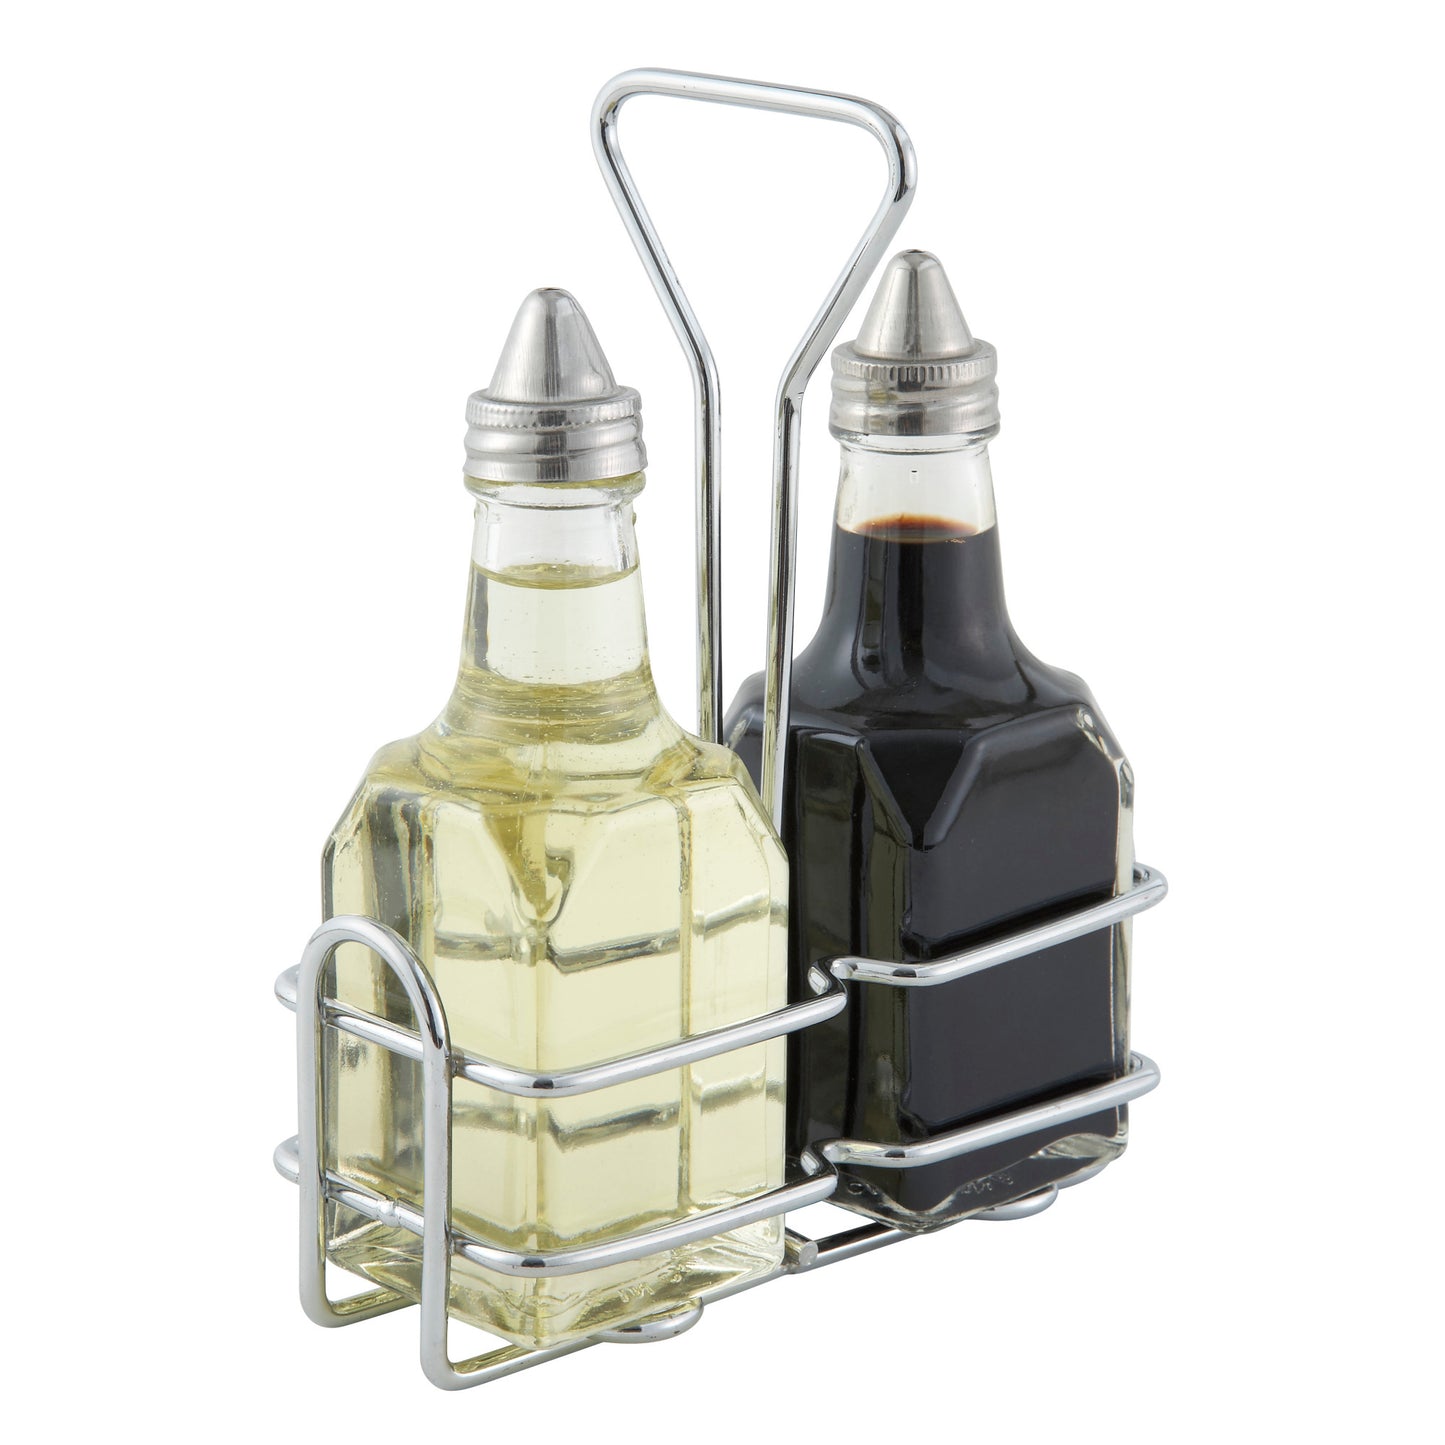 WH-3 - Chrome-Plated Cruet Rack for 6 oz Oil/Vinegar Bottles